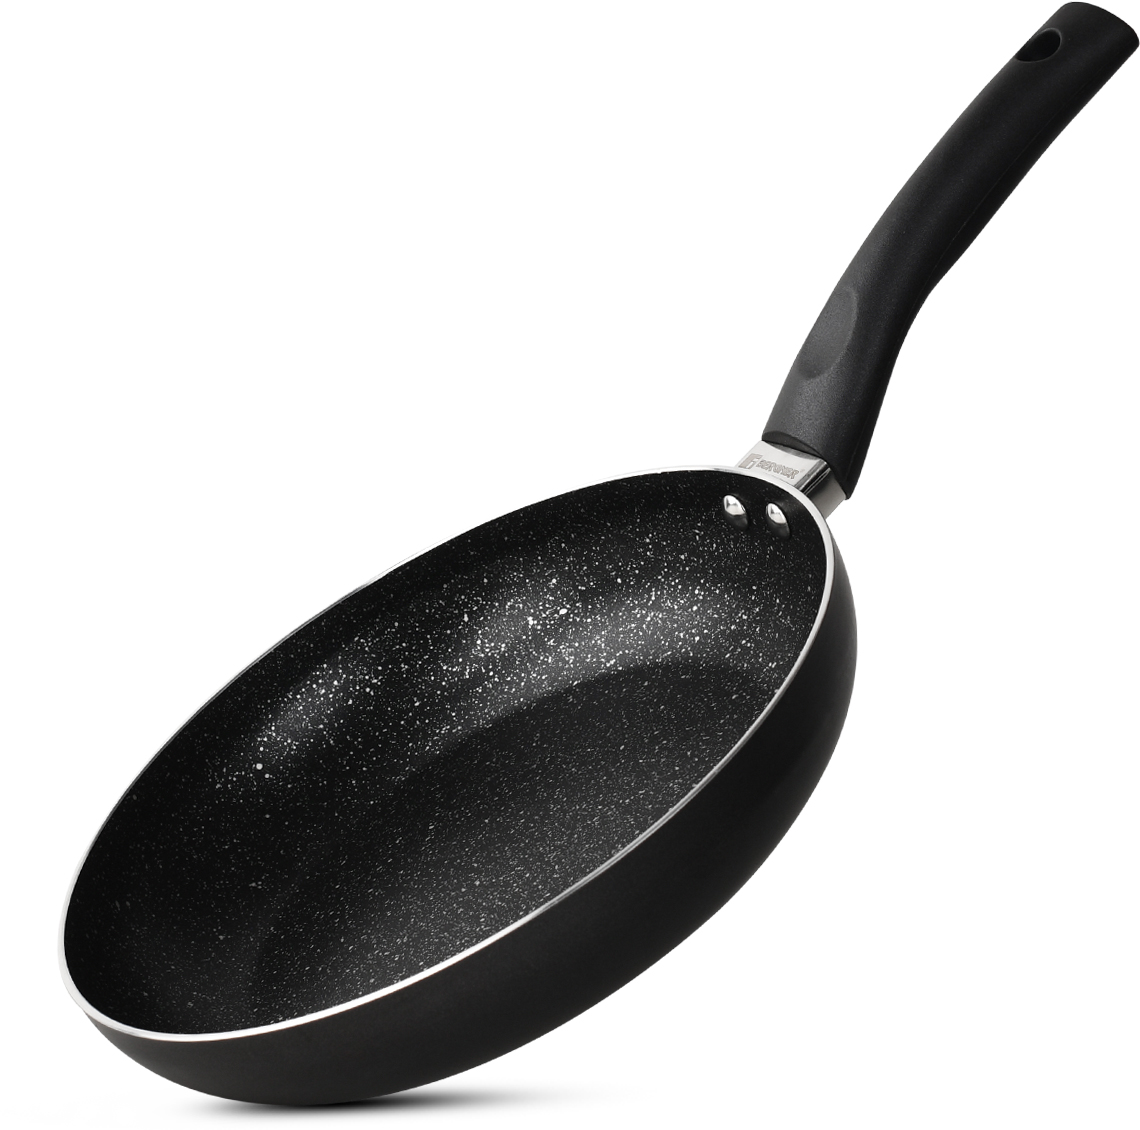 Bergner Essential Plus Non-stick Frypan, (Black)